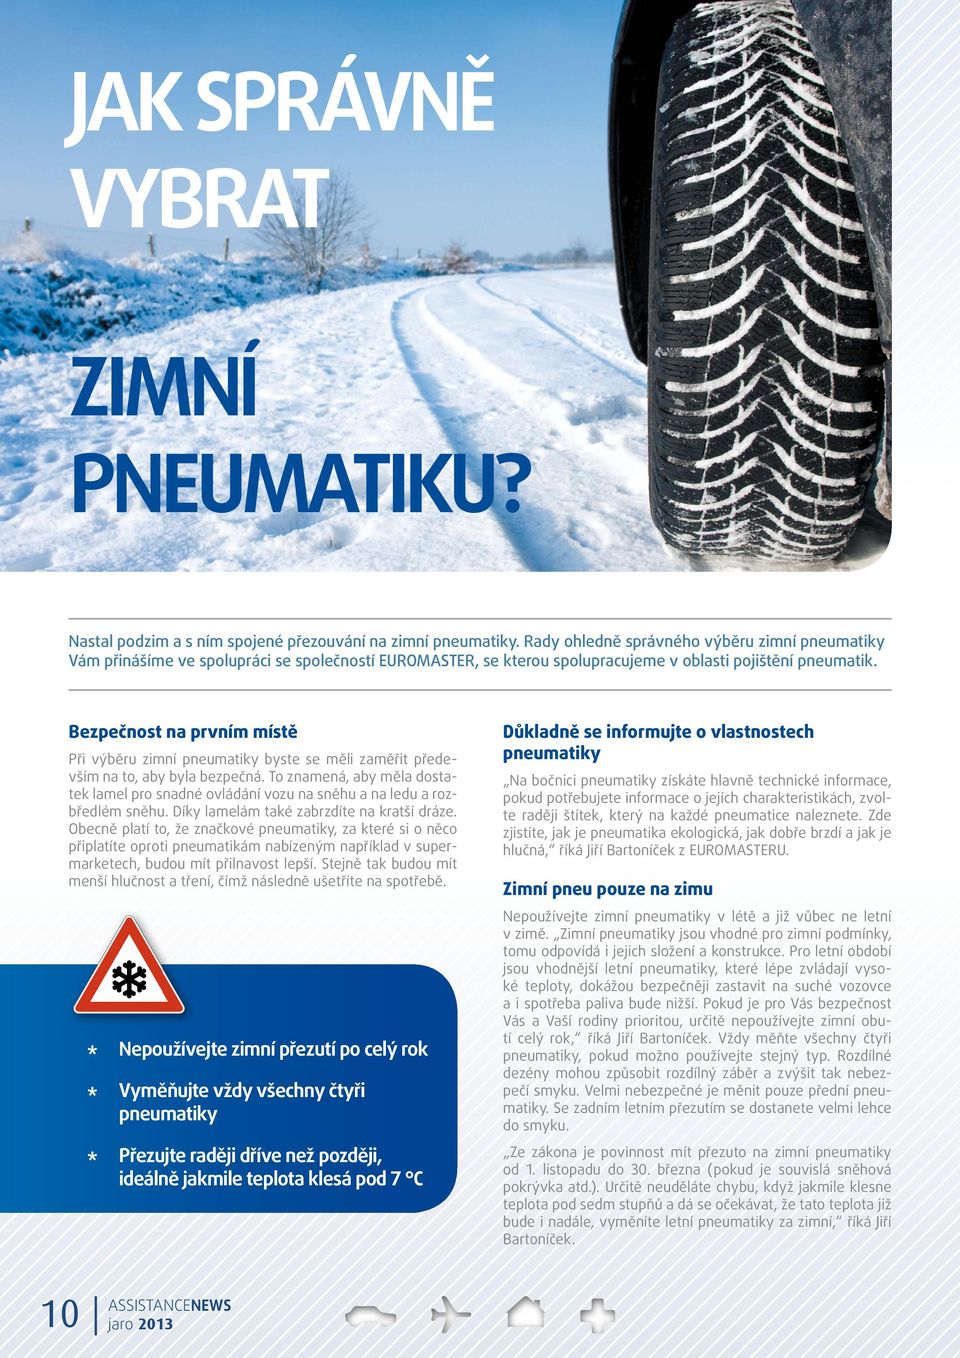 Bezpečnost na prvním místě Při výběru zimní pneumatiky byste se měli zaměřit především na to, aby byla bezpečná.